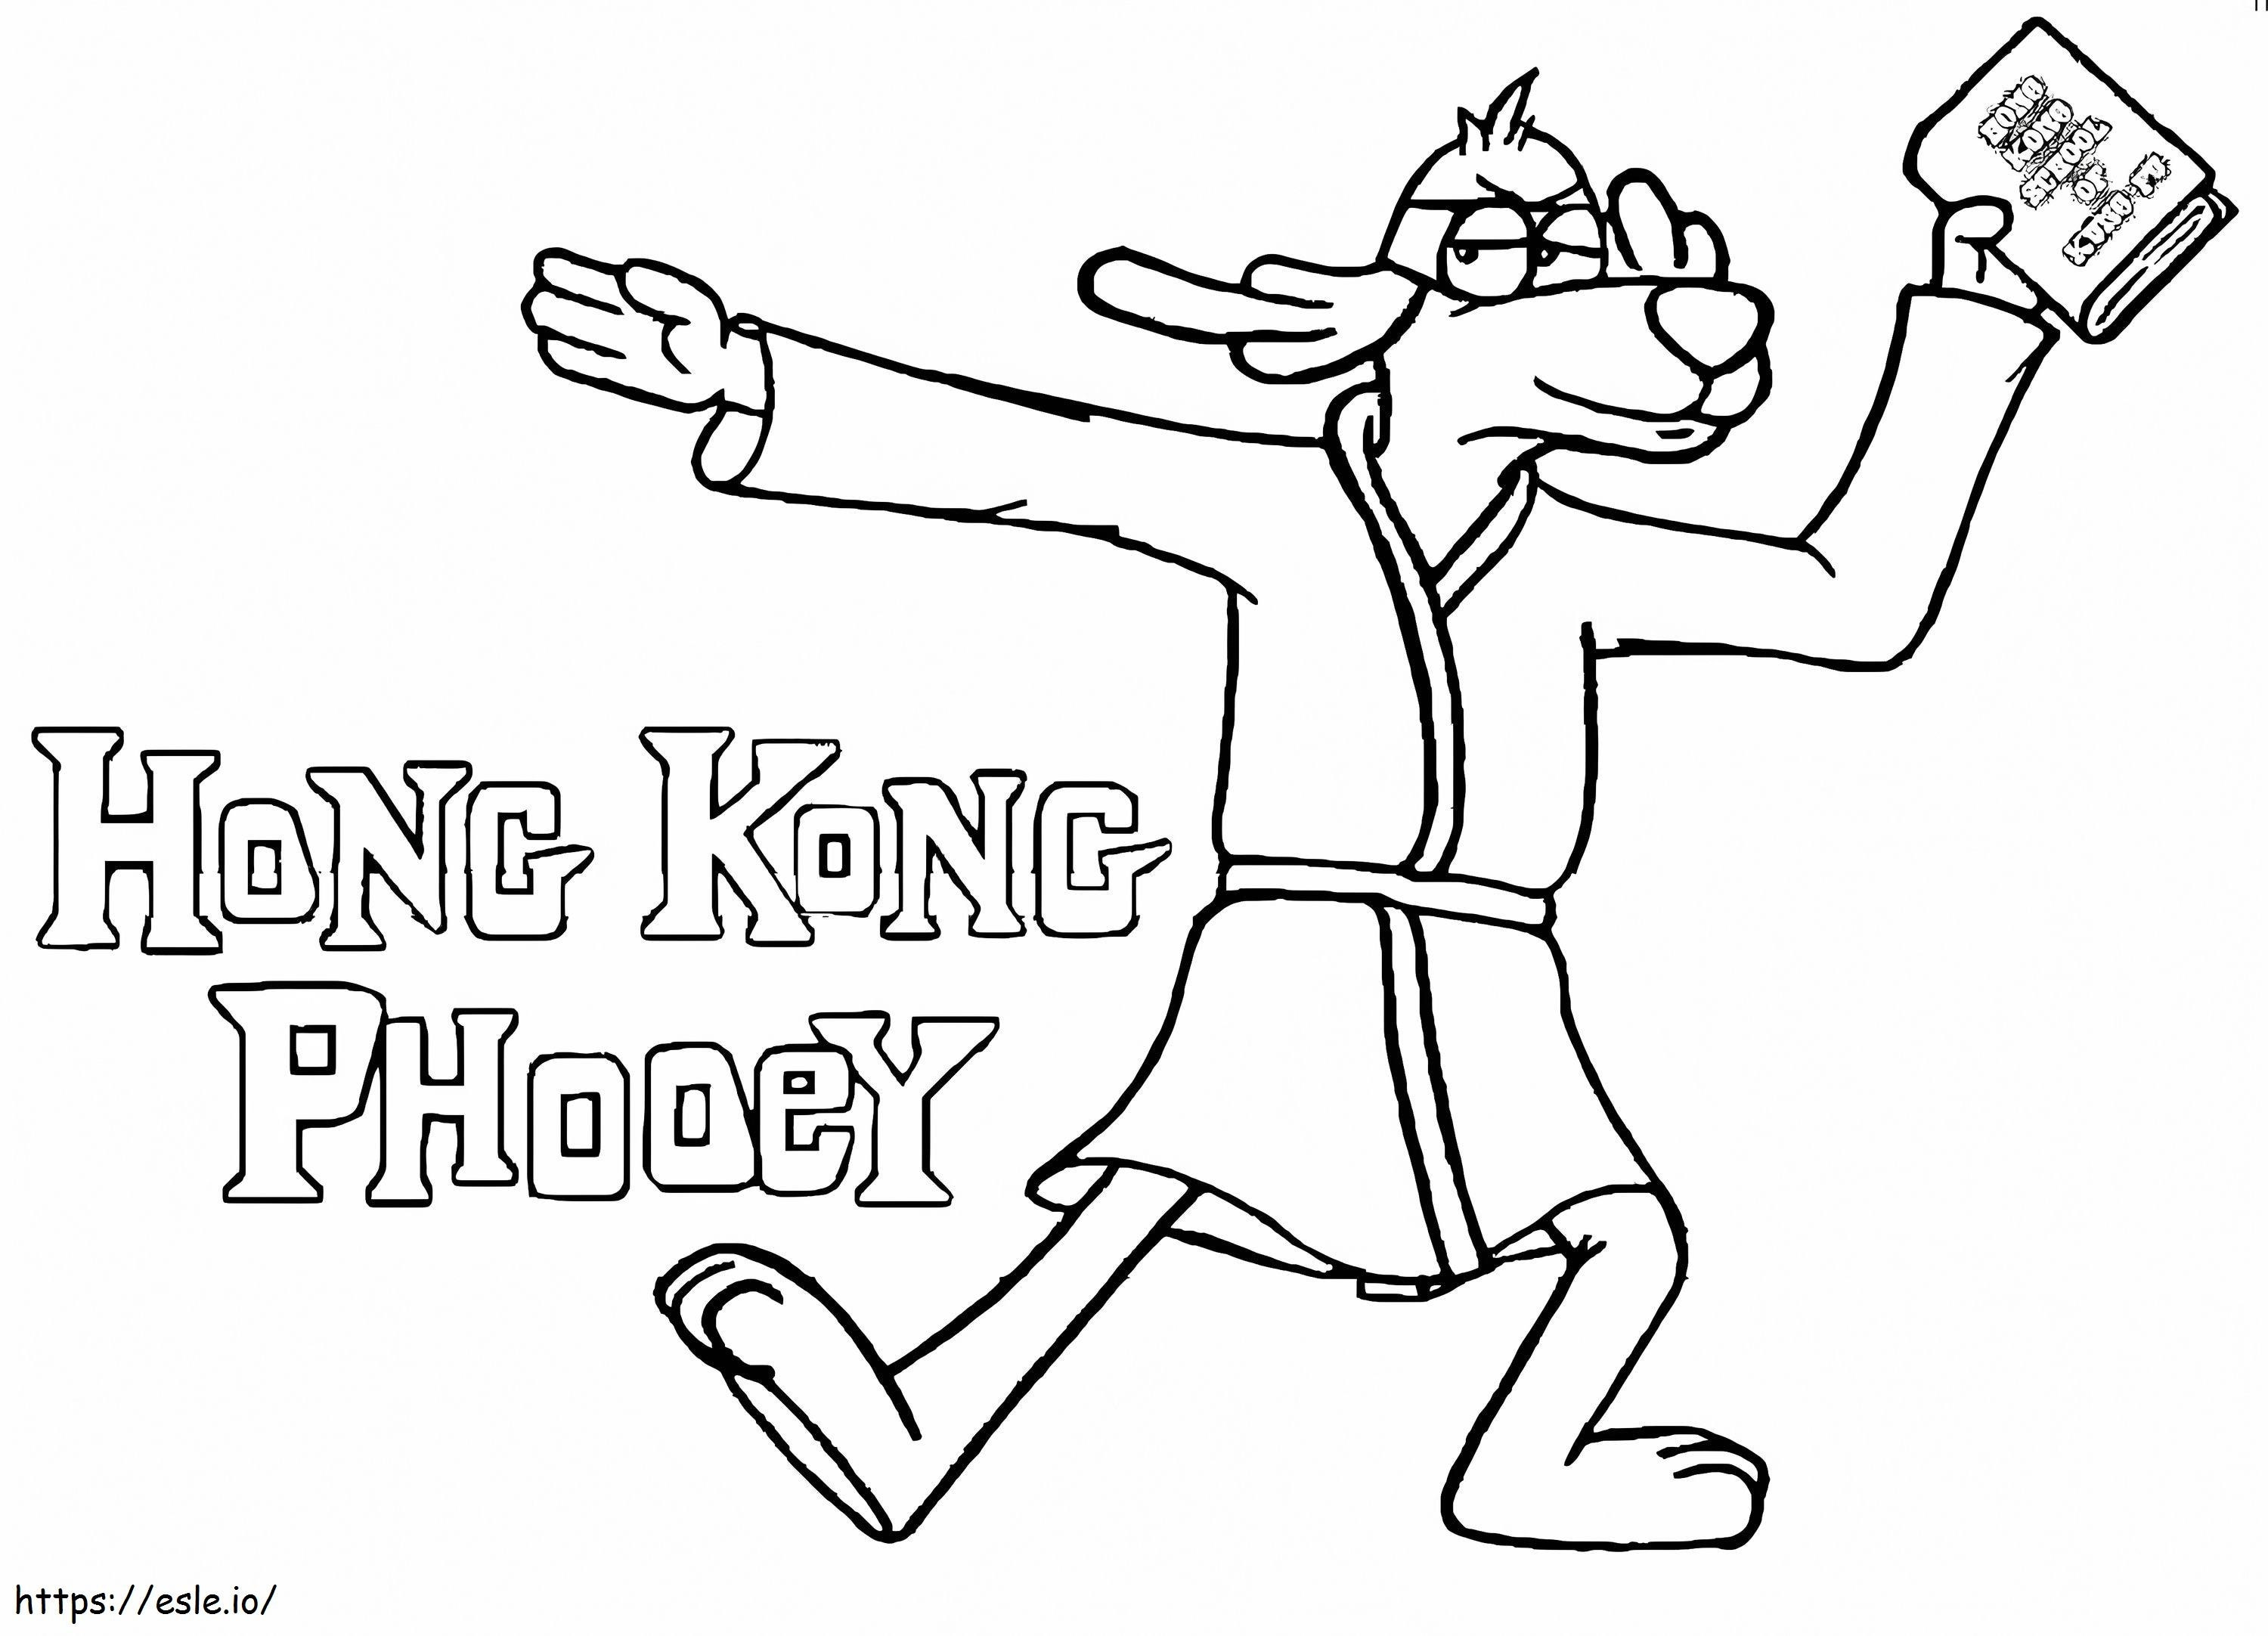 Hong Kong Phooey con un libro da colorare